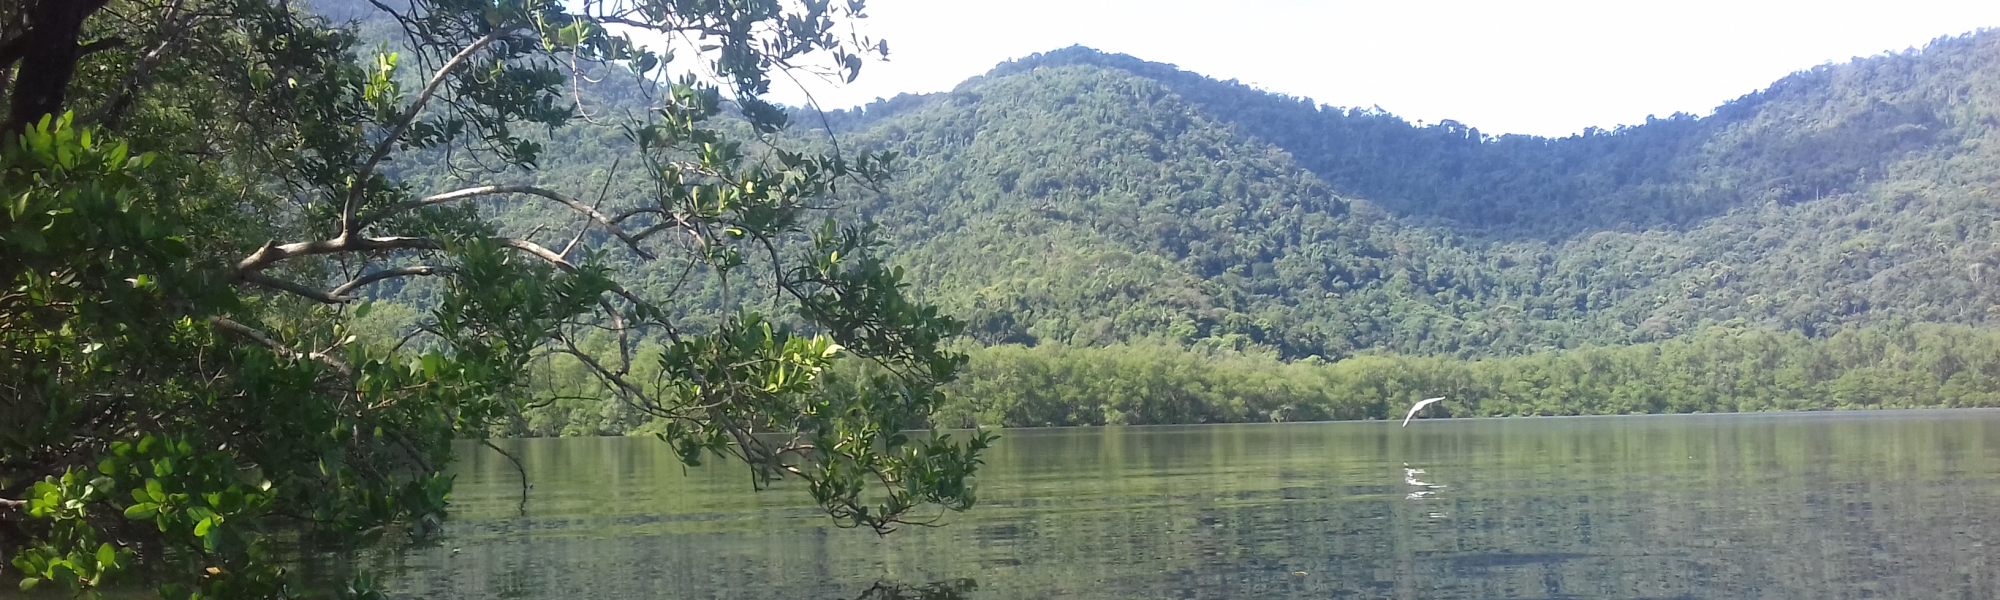 Mangrove préservée dans la région de Rio de Janeiro, Brésil - G. Abril